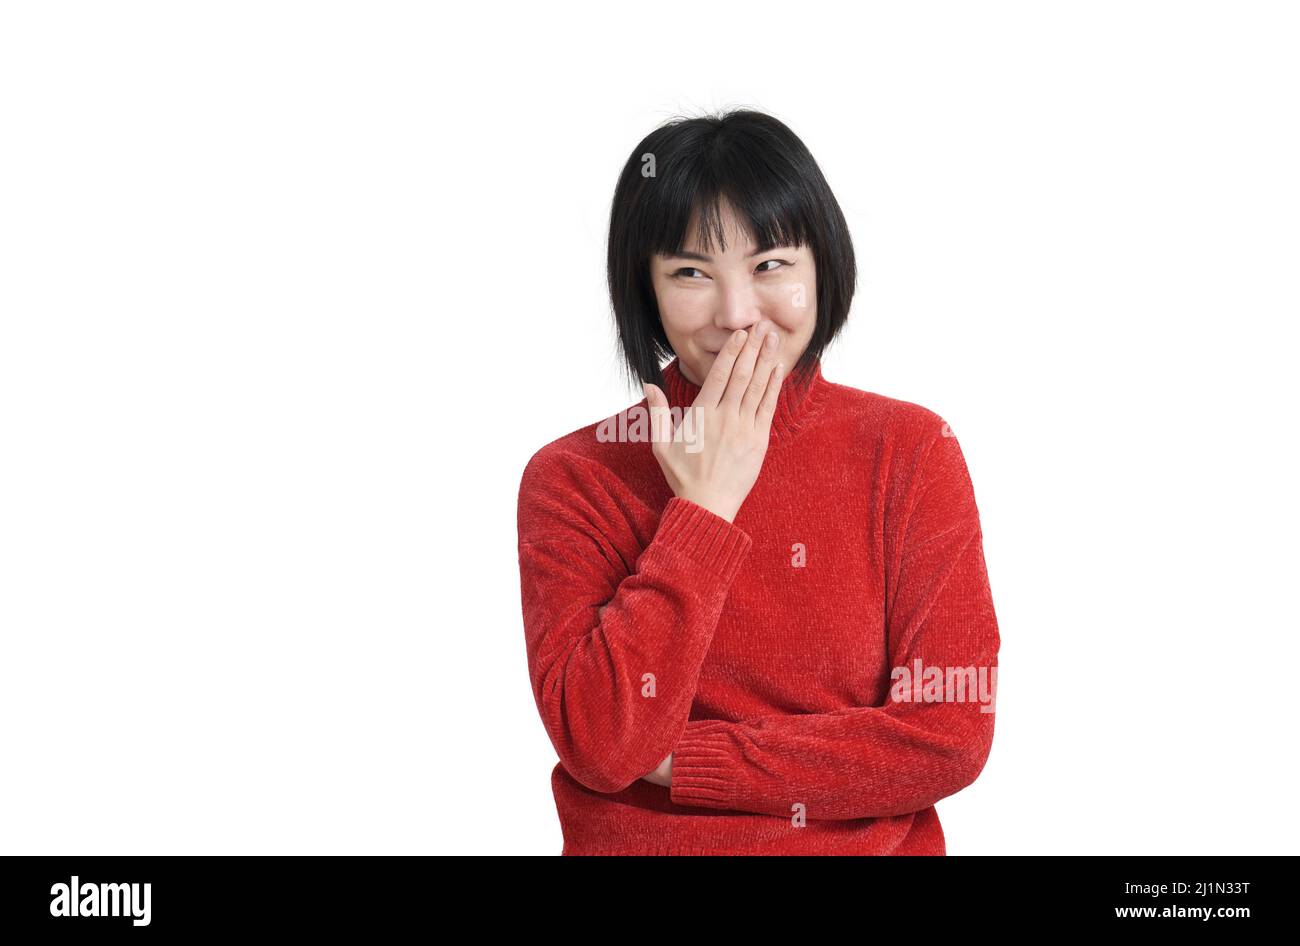 Jeune femme asiatique riant et rigolant couvrant la bouche avec une main, isolée Banque D'Images